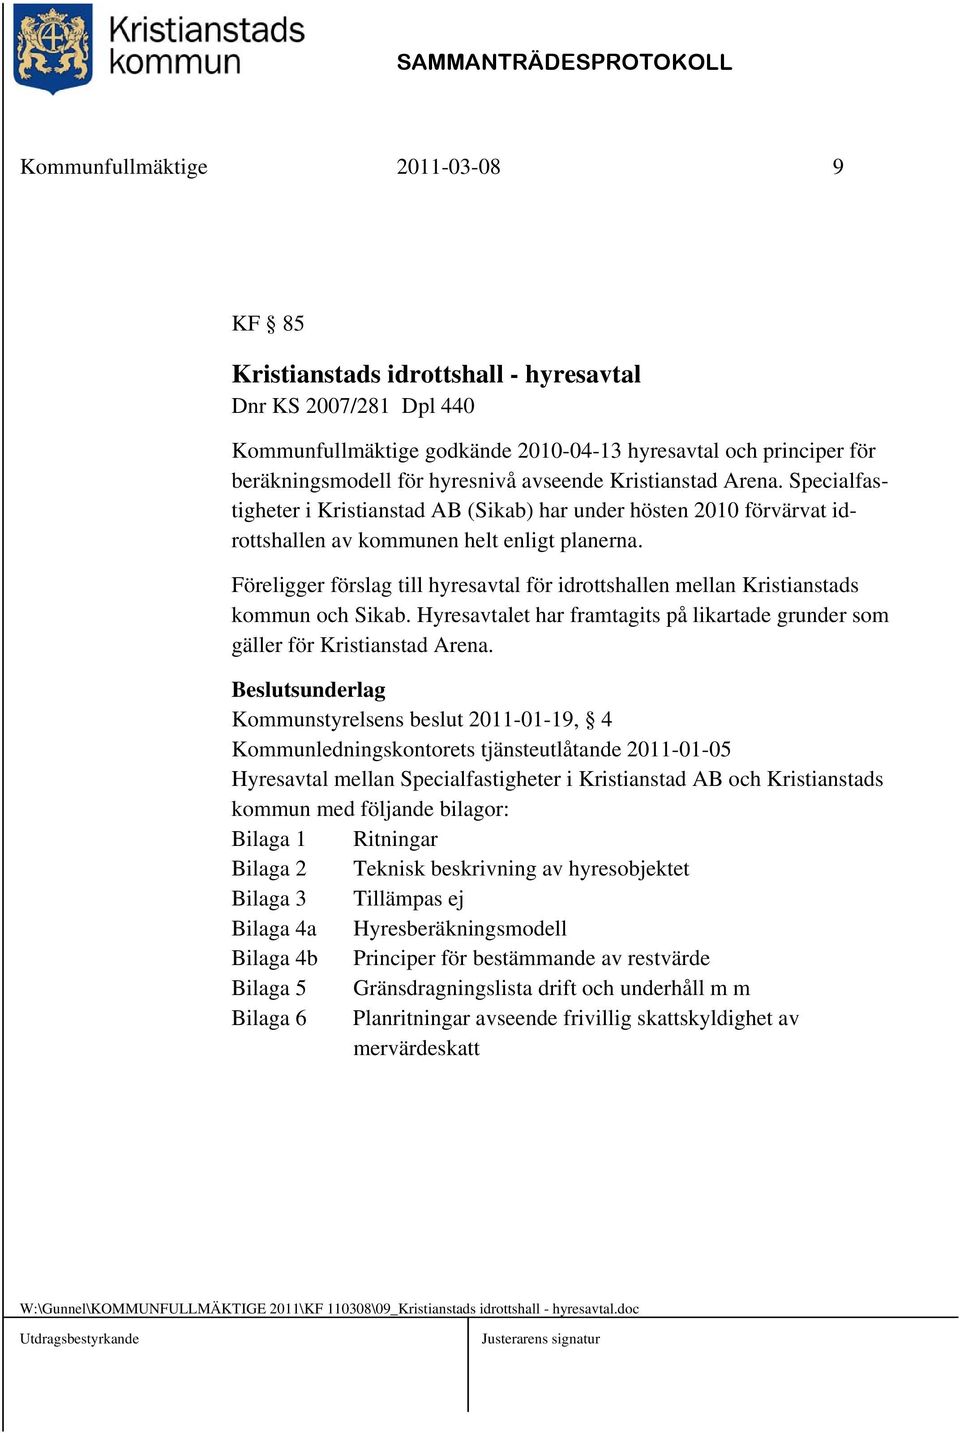 Föreligger förslag till hyresavtal för idrottshallen mellan Kristianstads kommun och Sikab. Hyresavtalet har framtagits på likartade grunder som gäller för Kristianstad Arena.